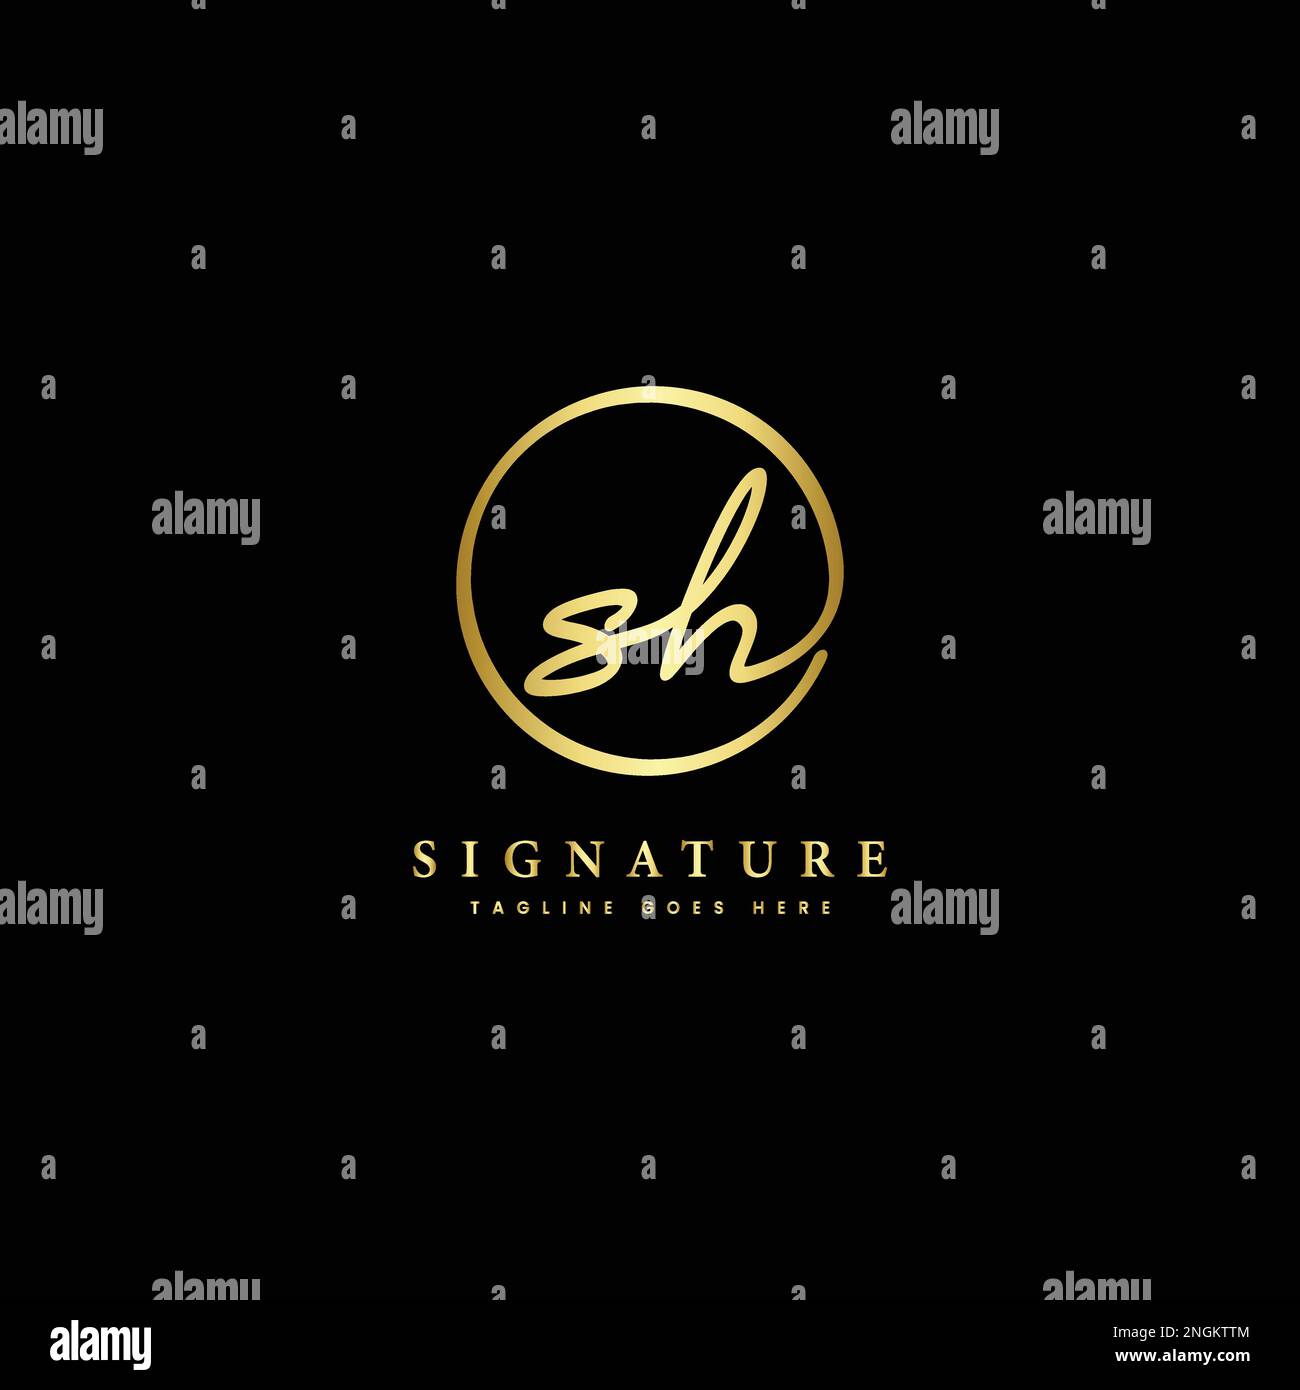 S, H, SH lettera iniziale manoscritta e logo vettoriale della firma. Modello aziendale con disegno a linee di forma rotonda Illustrazione Vettoriale